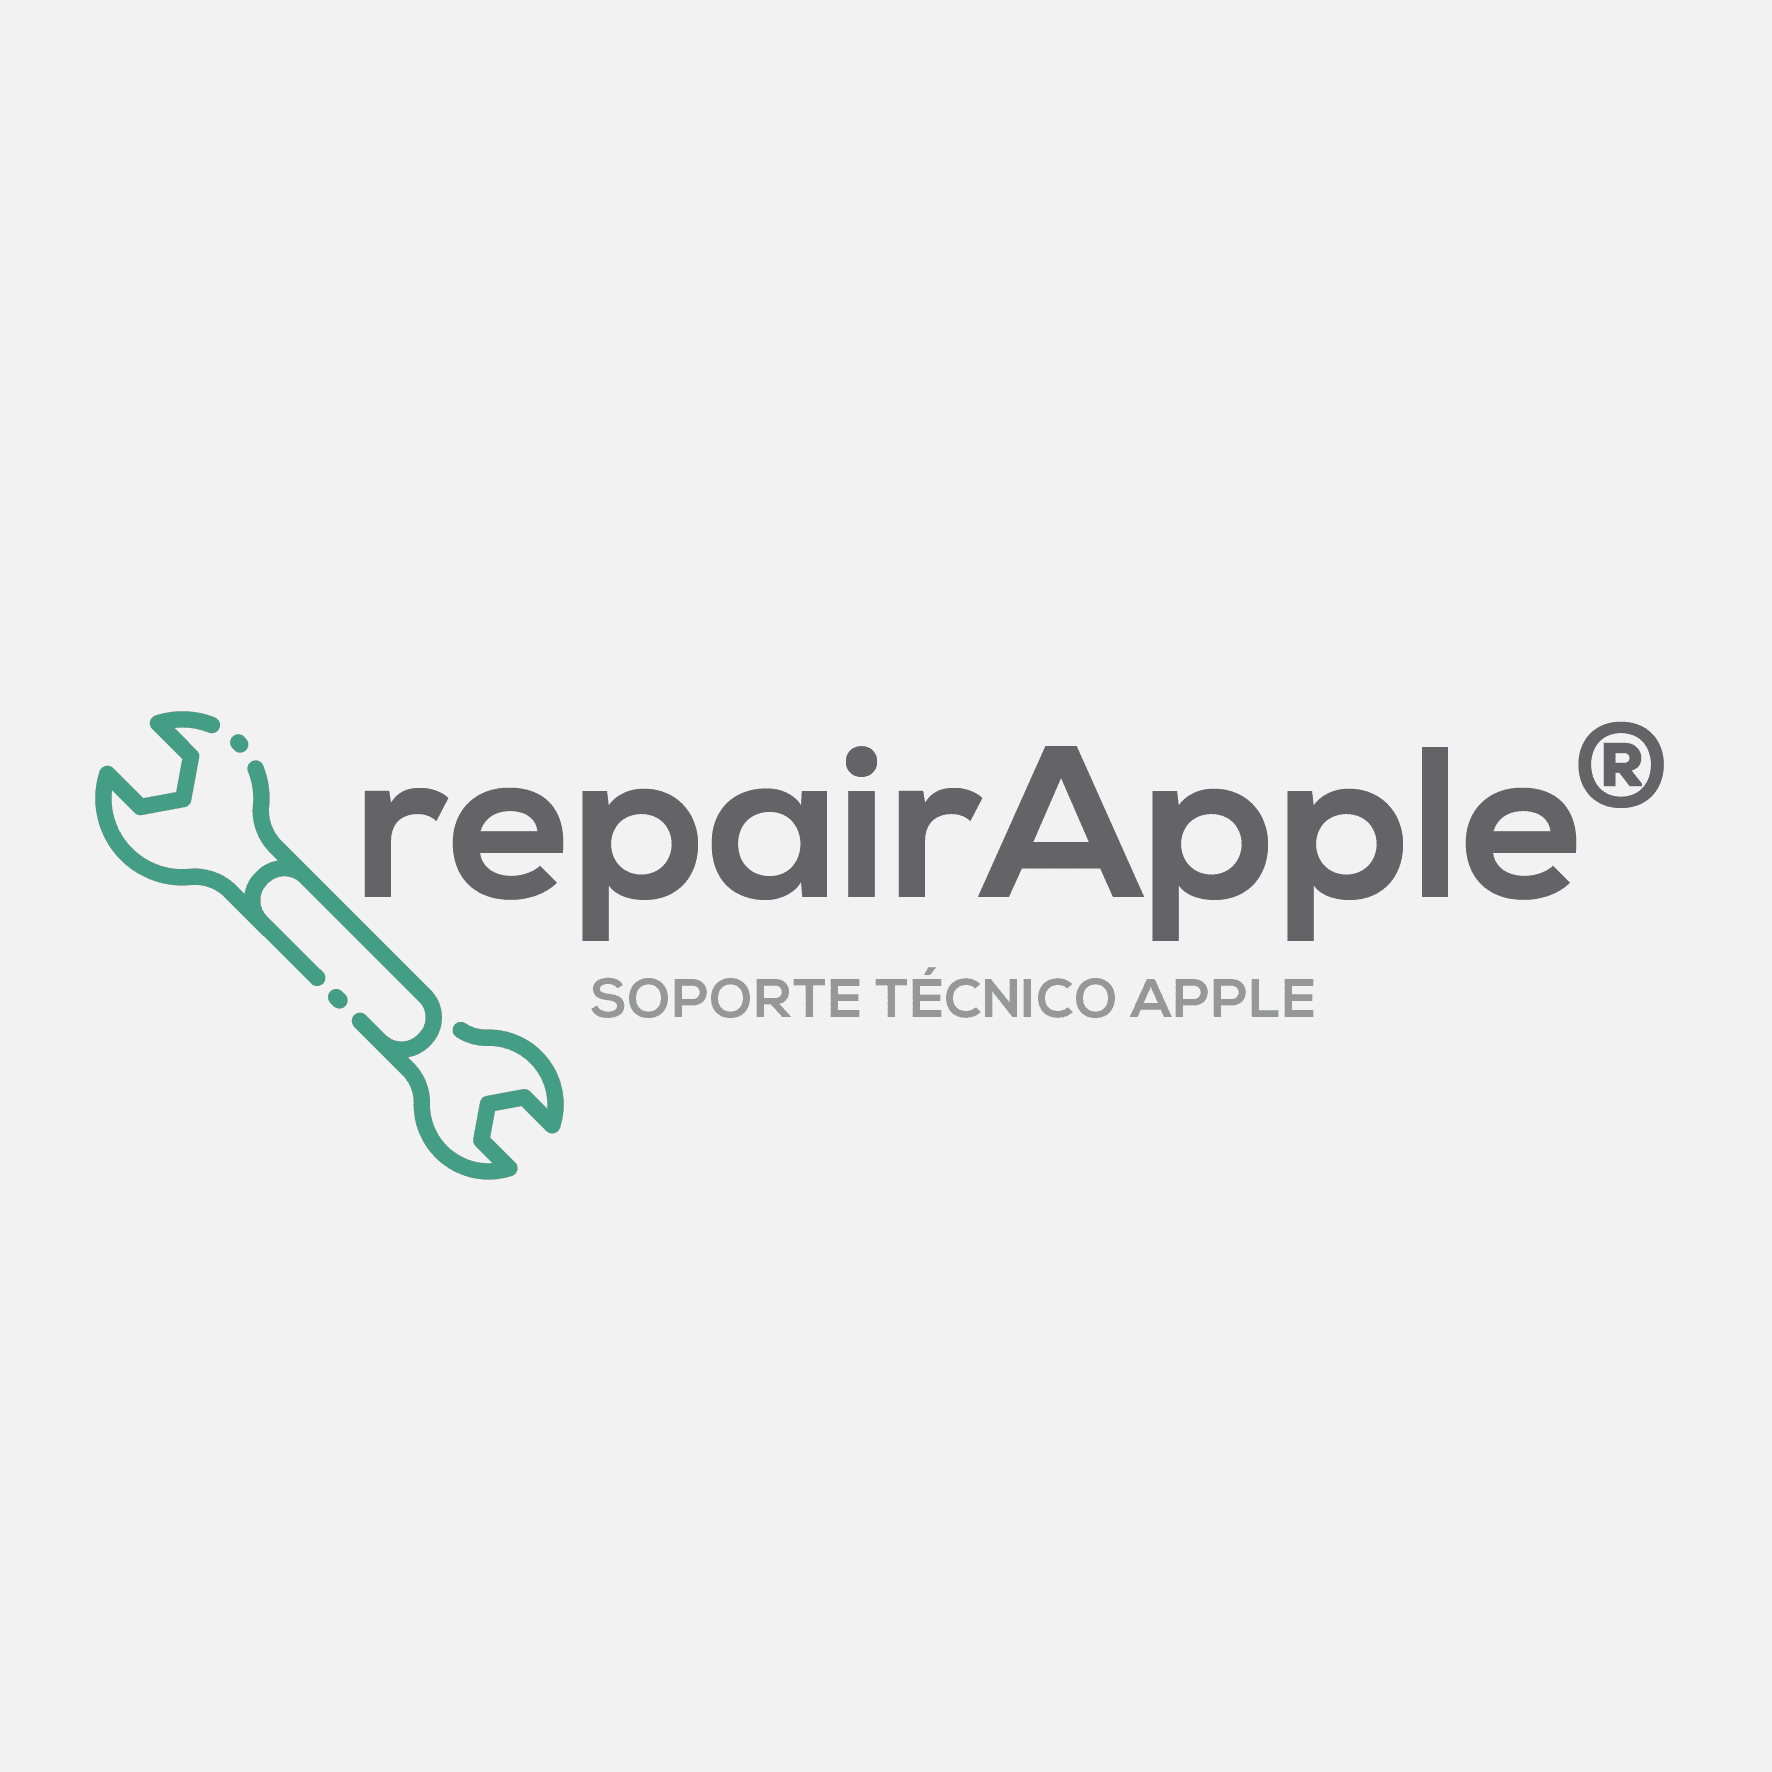 Repair Apple